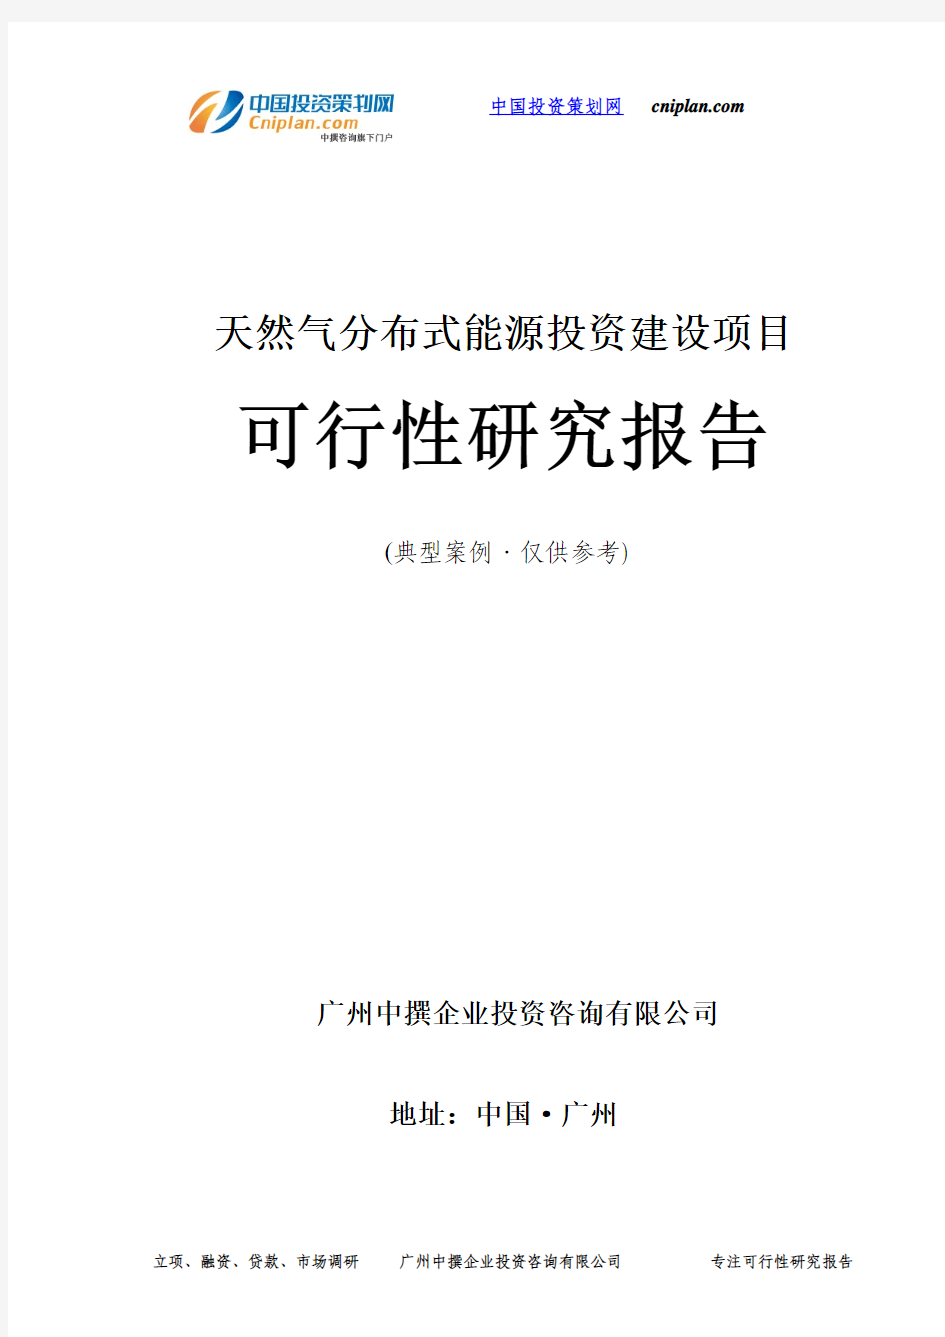 天然气分布式能源投资建设项目可行性研究报告-广州中撰咨询